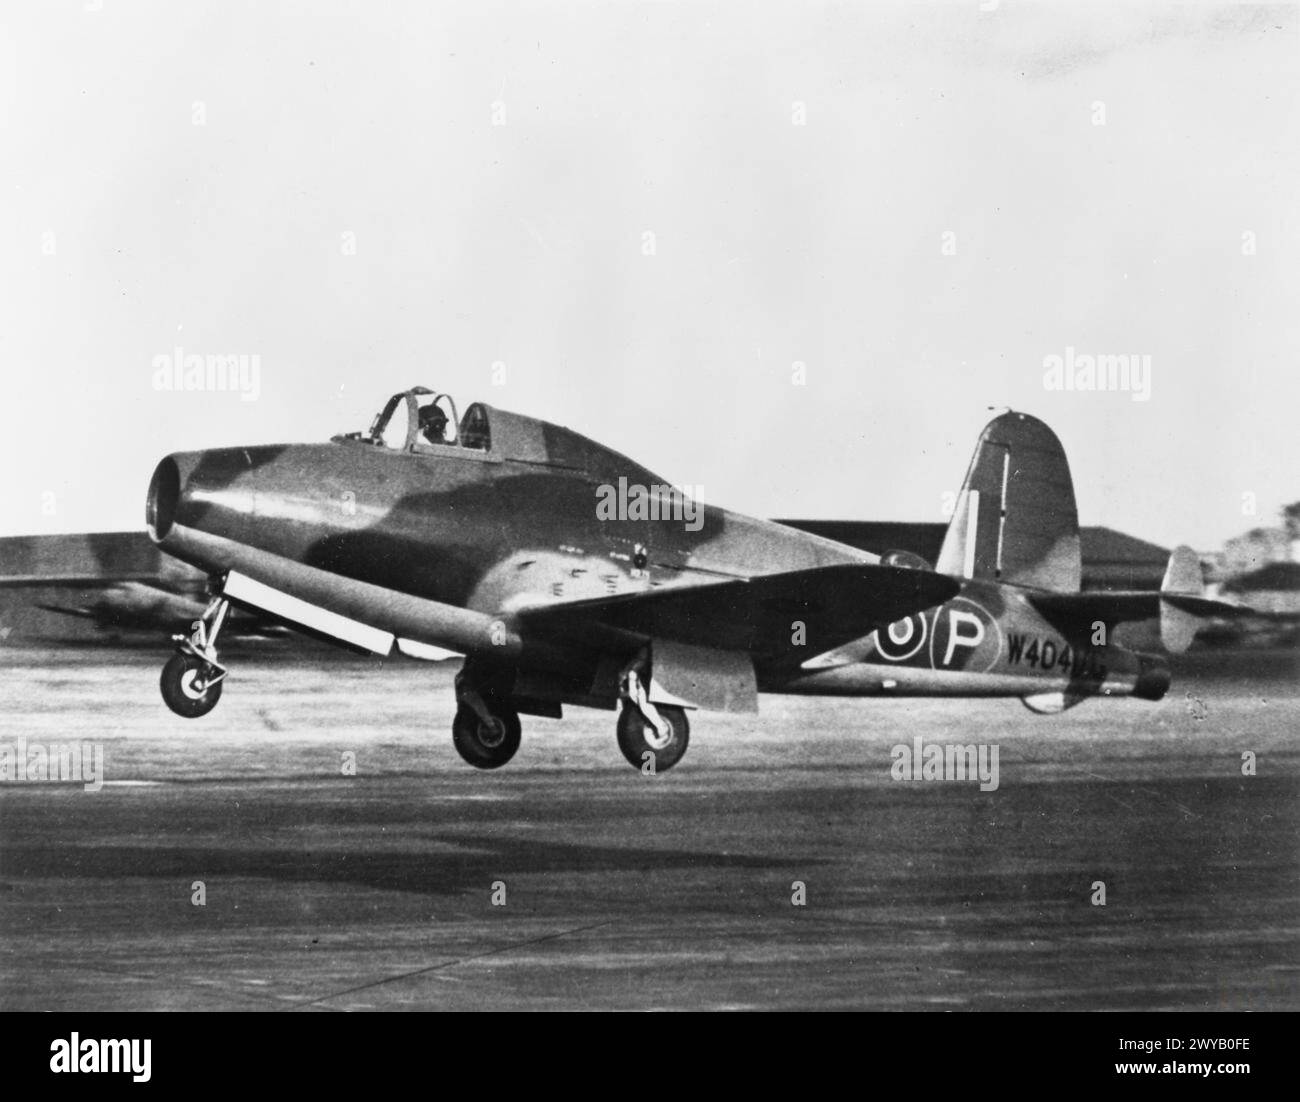 DIE ROYAL AIRCRAFT ESTABLISHMENT, FARNBOROUGH, 1939-1945. - Die Gloster-Whittle E.28/39, W4041/G, gesteuert von Staffelführer J Moloney, startet von Farnborough zu einem Testflug. Die E.28/39 war das erste alliierte Düsenflugzeug, das ihren Erstflug im Mai 1941 absolvierte. Es blieb bis 1946 bei der RAE, als es dem Science Museum in London präsentiert wurde. , Britische Regierung, Royal Aircraft Establishment, Farnborough Stockfoto